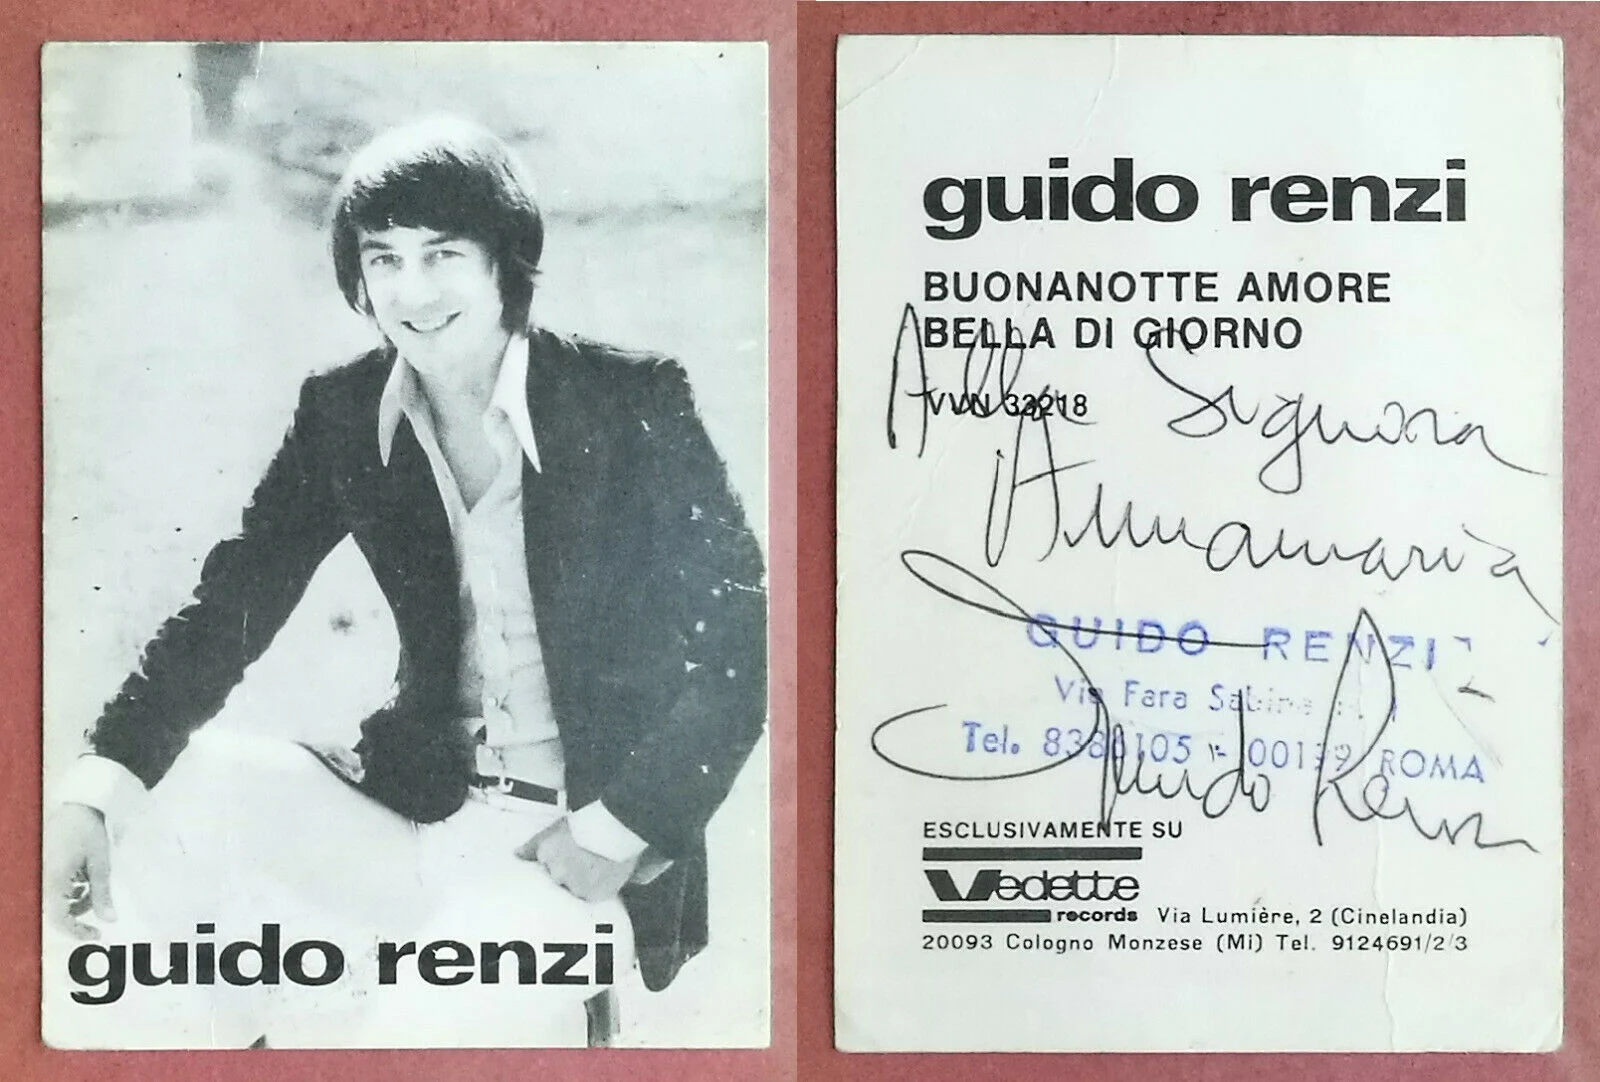 Guido Renzi - A voz por trás de grandes sucessos